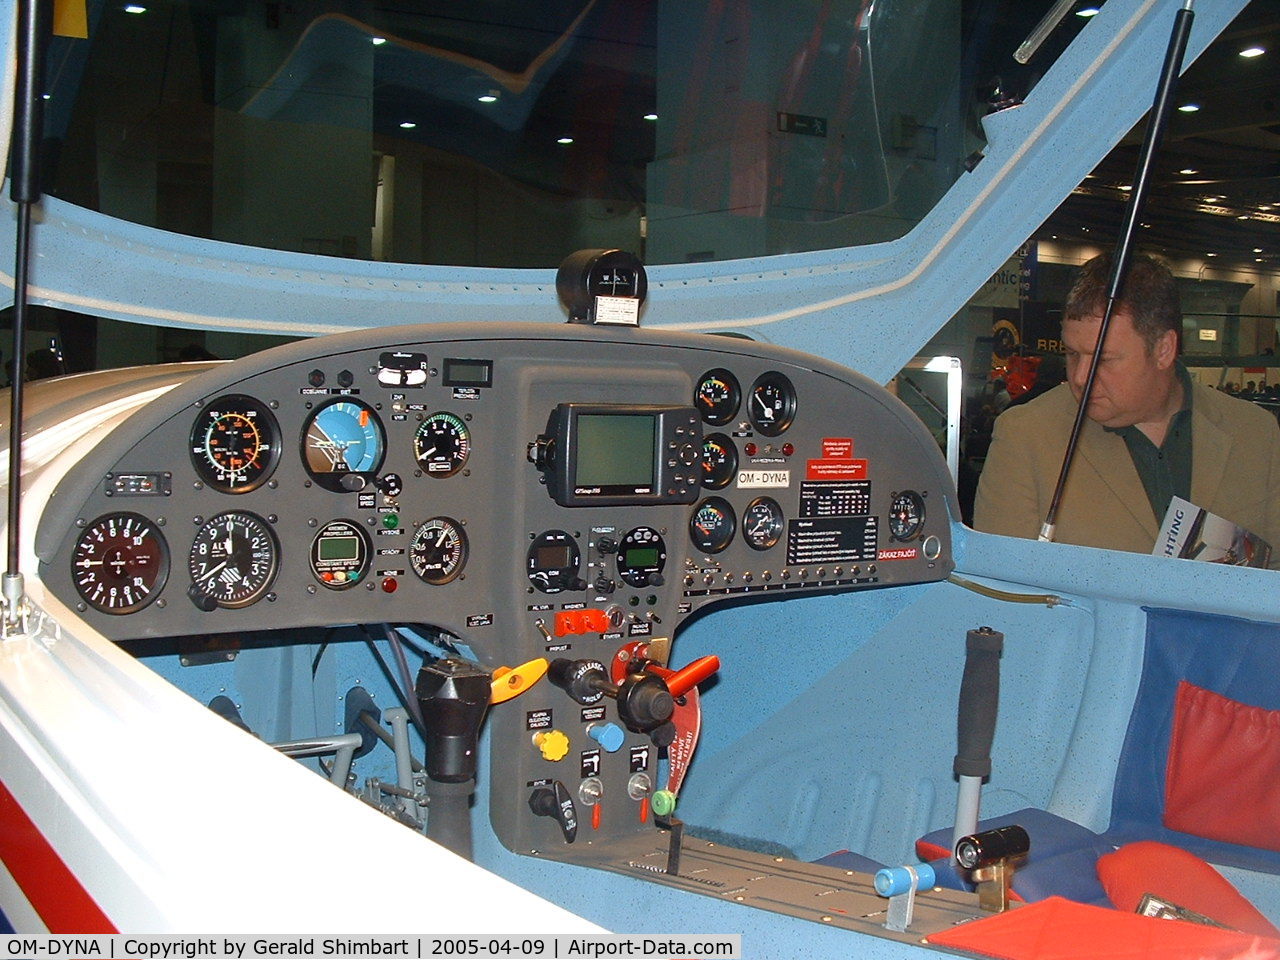 OM-DYNA, 2003 Aerospool WT-9 Dynamic C/N DY027/2003, Aerospool Dynamic WT9